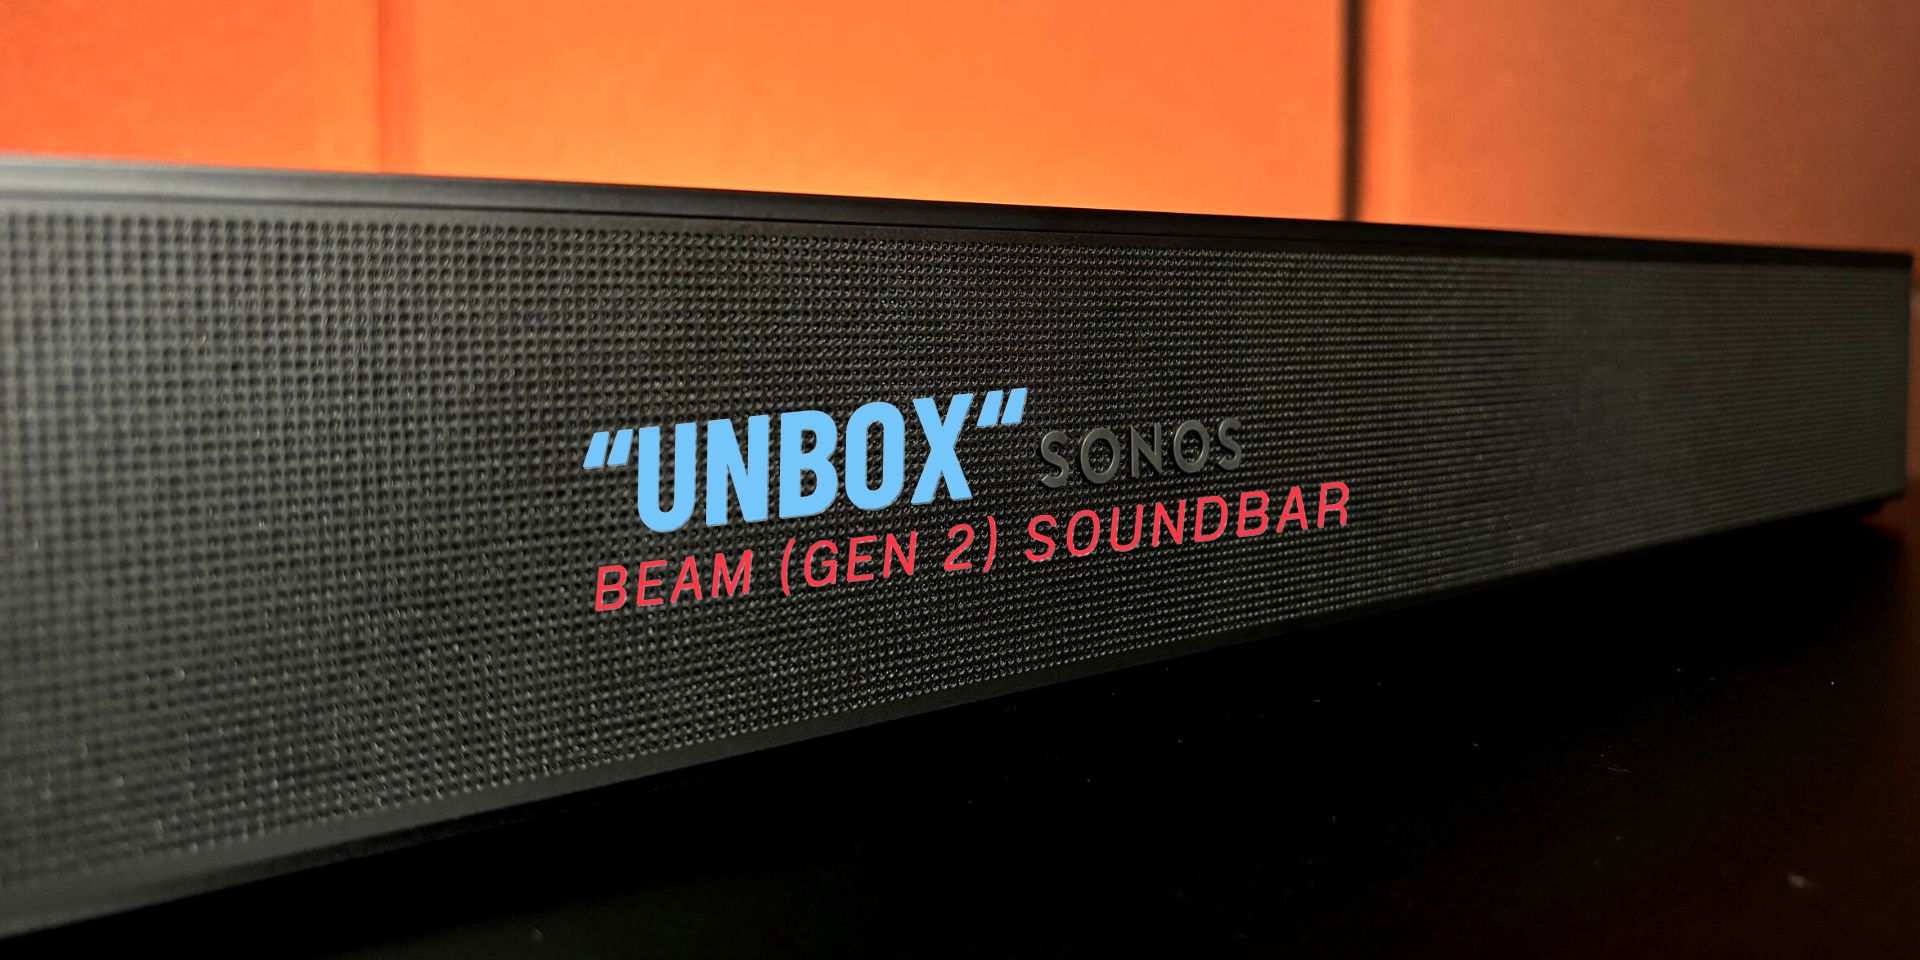 มาลองสัมผัสเจ้า Beam (Gen 2) Soundbar ตัวเทพจากแบรนด์ SONOS!!